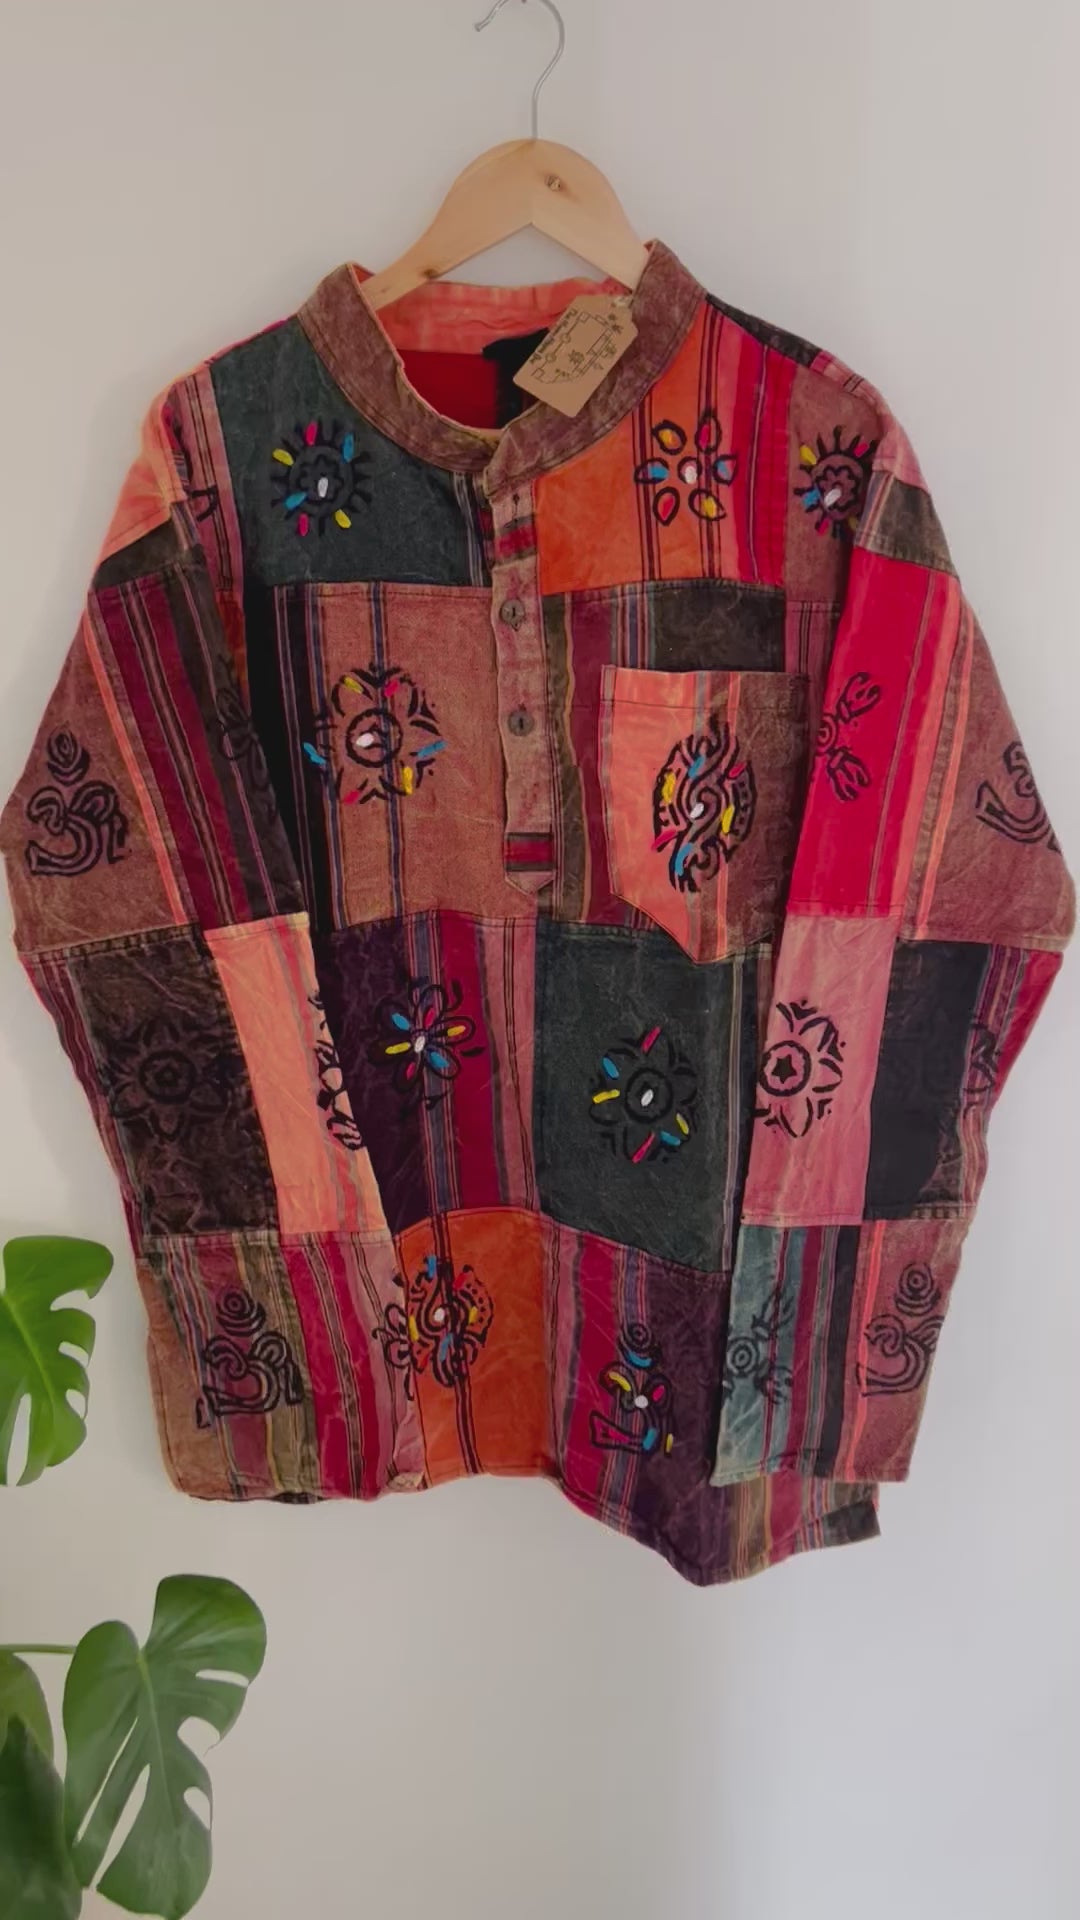 Handmade fair trade boho hippie shirt